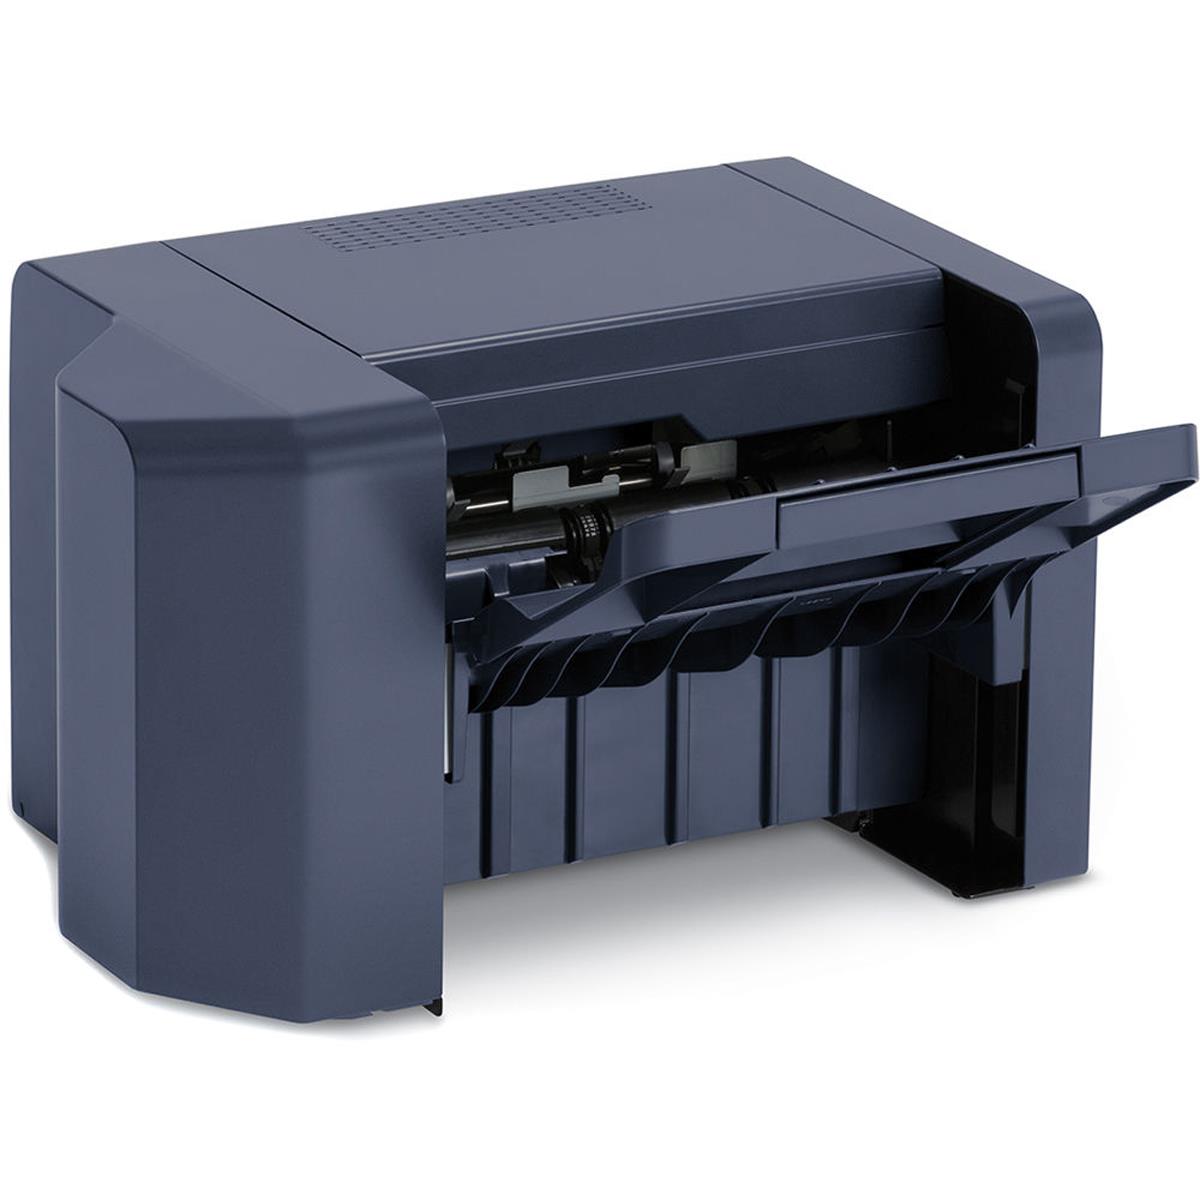 

Xerox Finisher w/ 500 Sheet Stacking & Stapling for VersaLink B600/C600 Printer